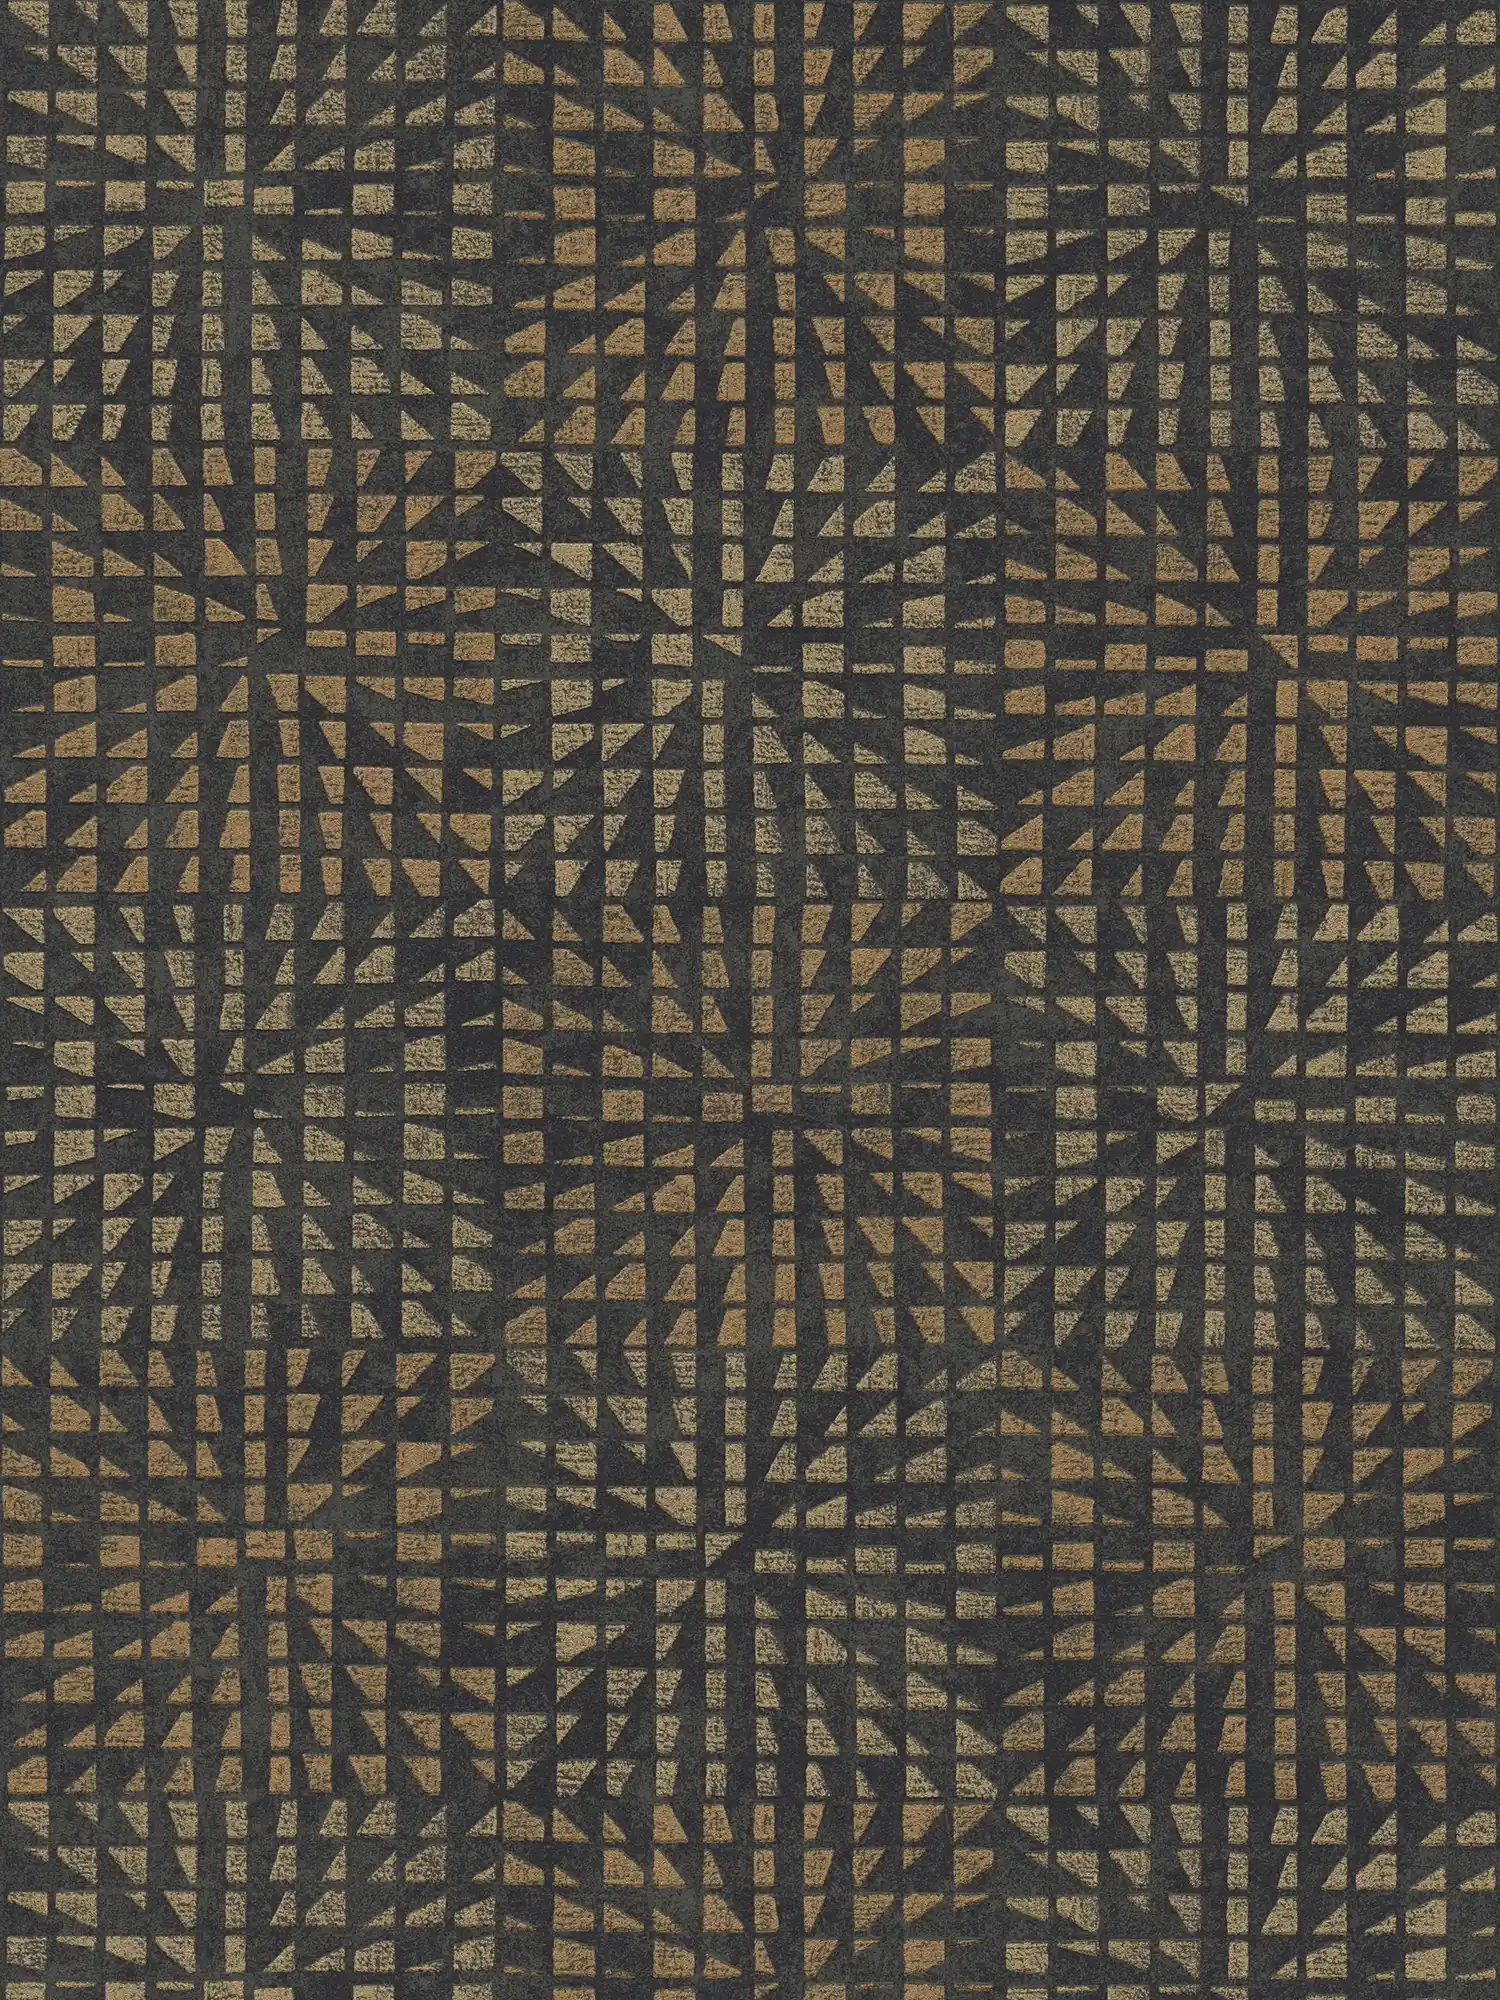         Ethno behang met structuurpatroon & mozaïekeffect - zwart
    